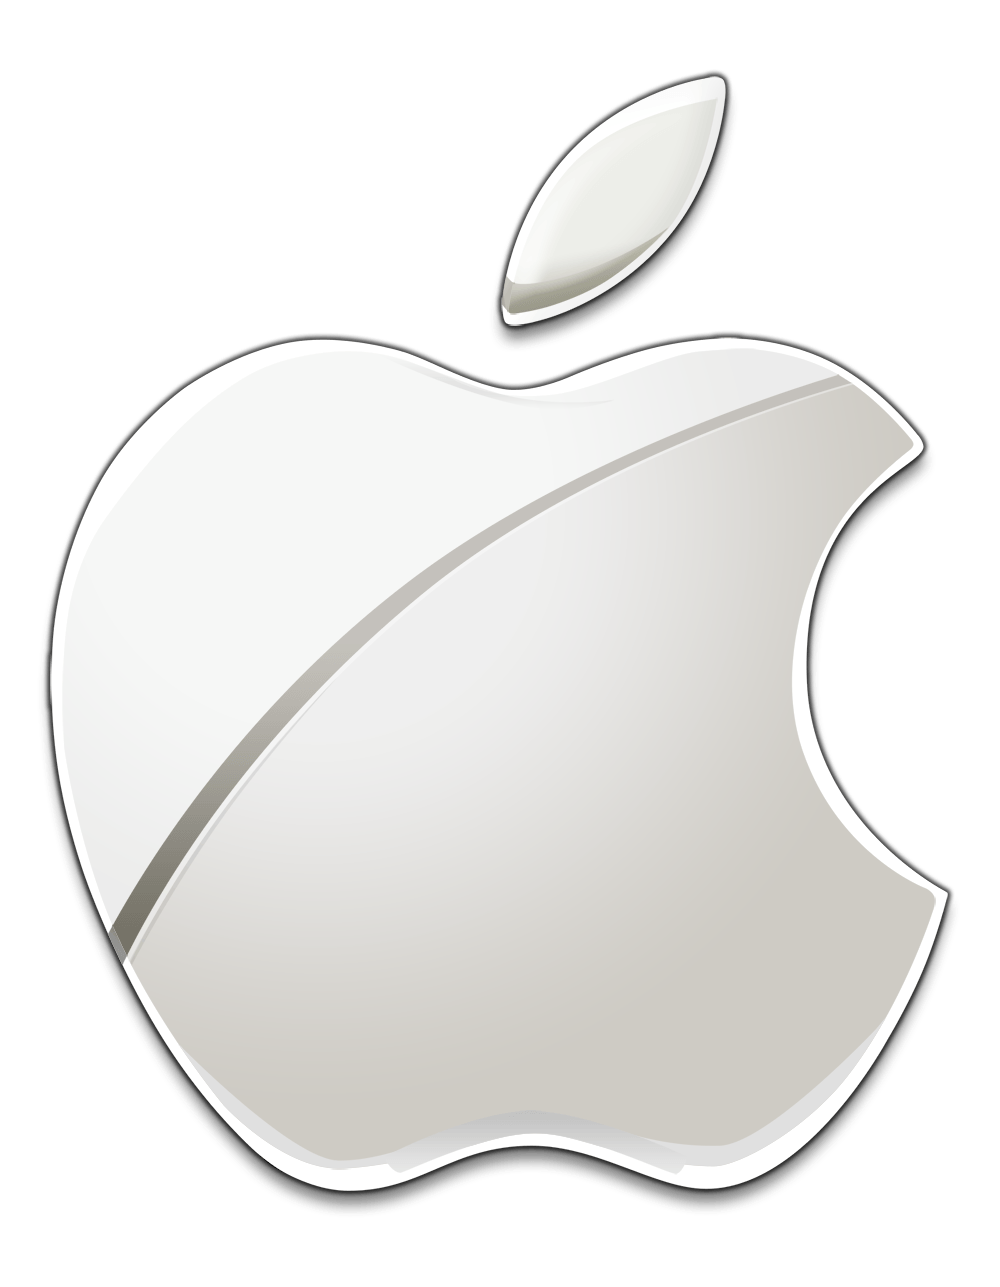 New Apple Logo - White Apple logo | Apple | Pinterest | Apple logo, Logos and Apple